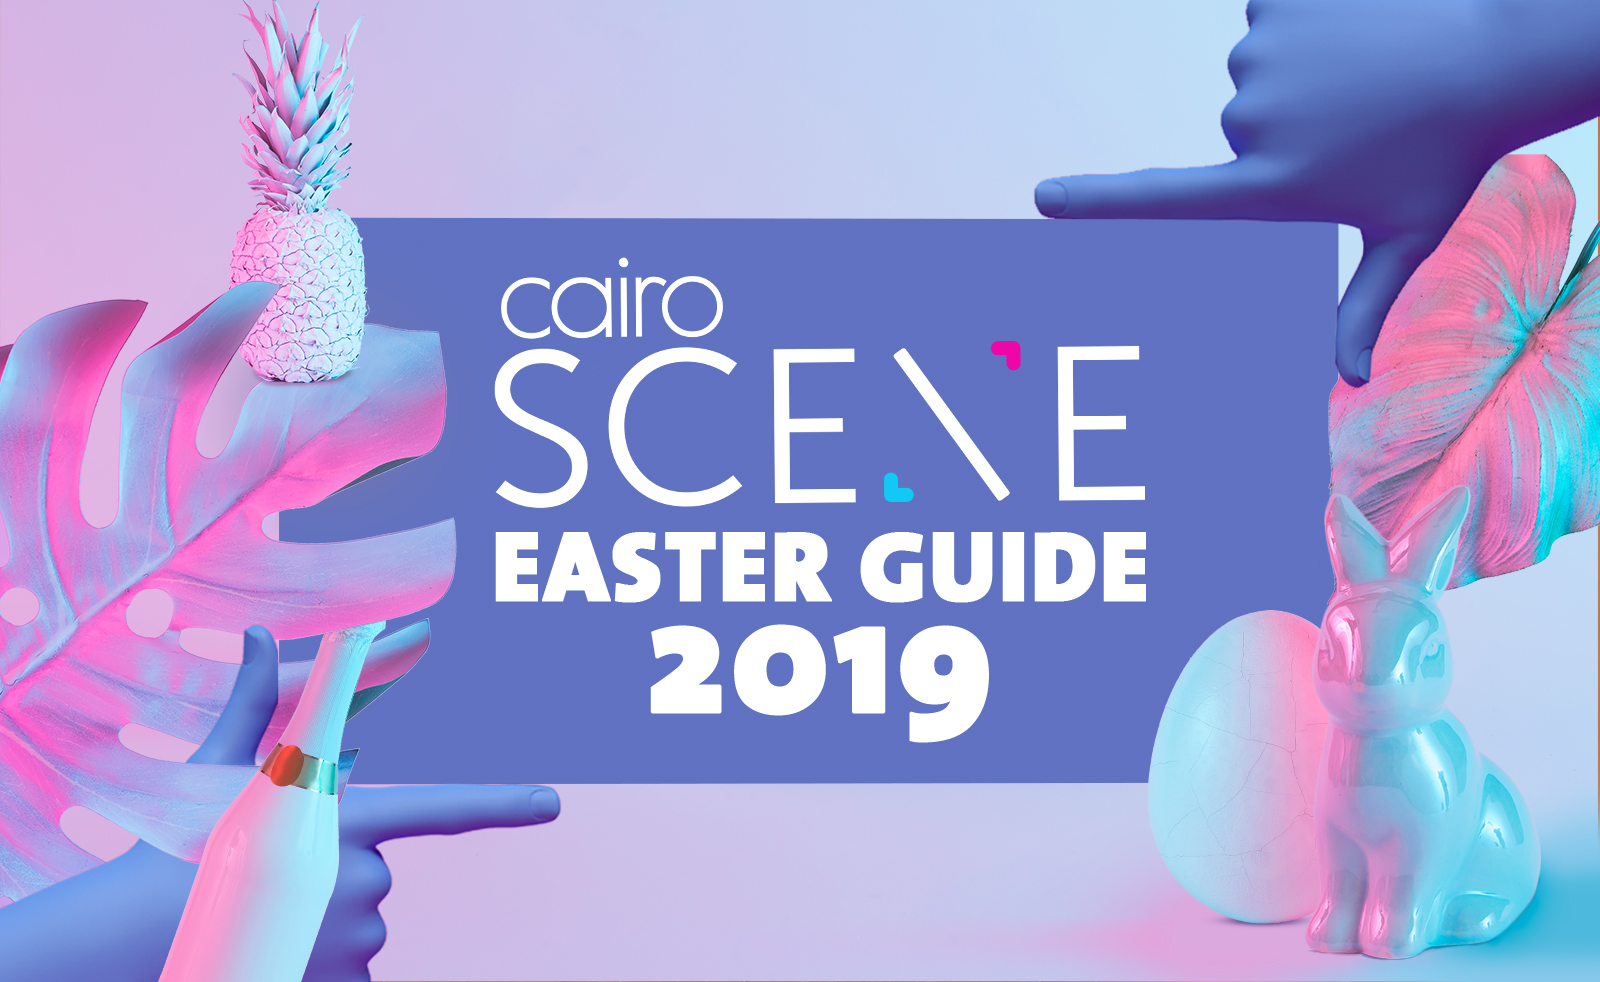 CairoScene Easter Guide 2019